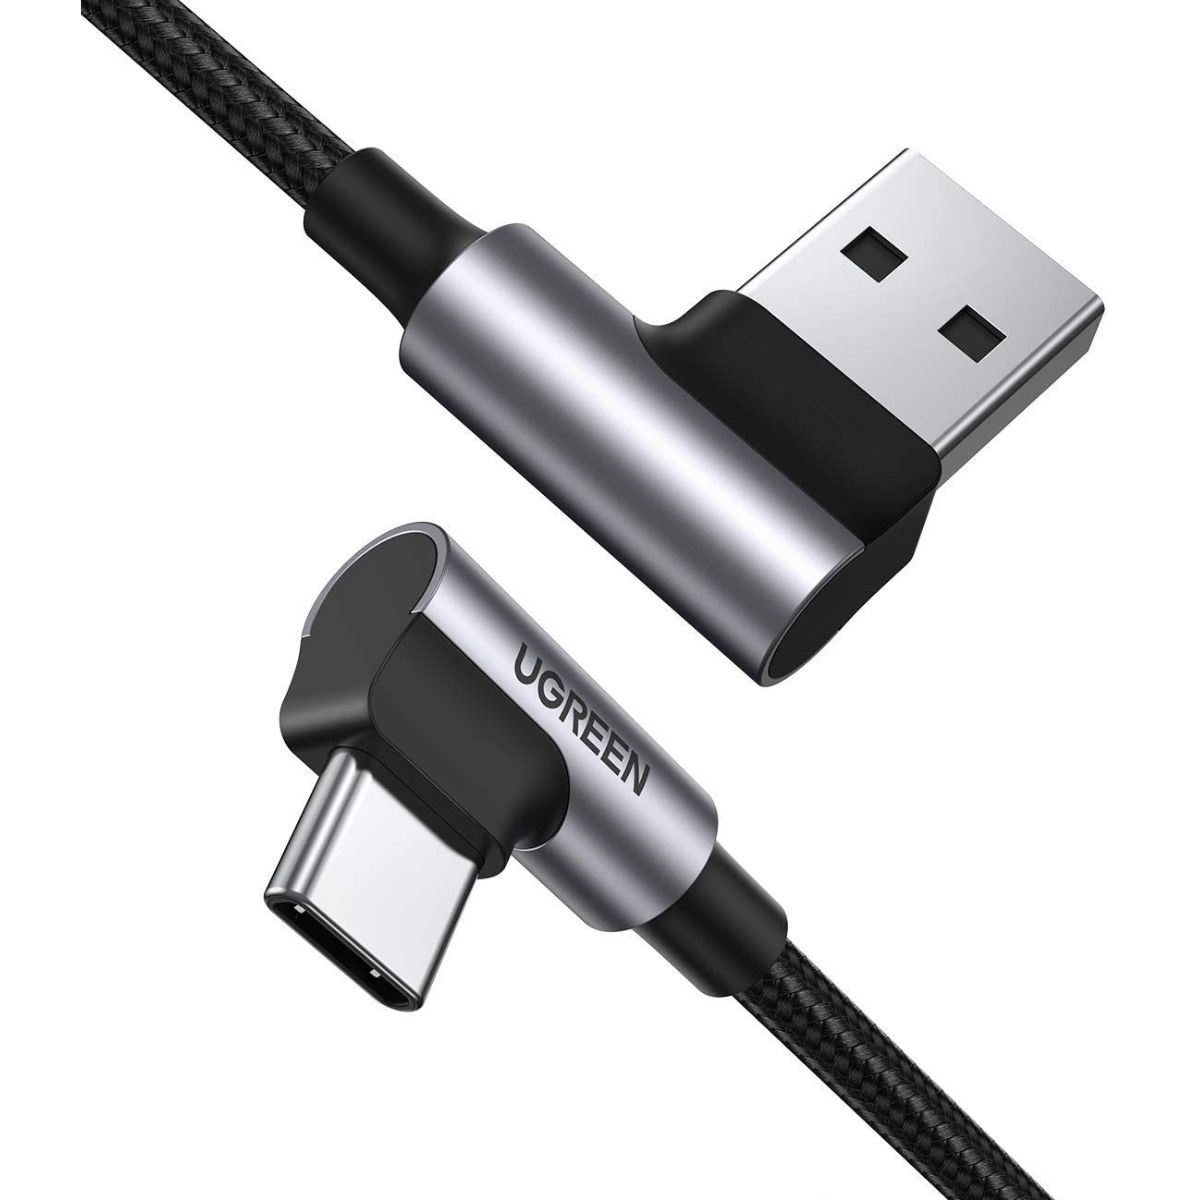 Cáp dài 2m USB Type-C bẻ góc Ugreen 20857 US176 màu đen, vỏ nhôm mạ niken